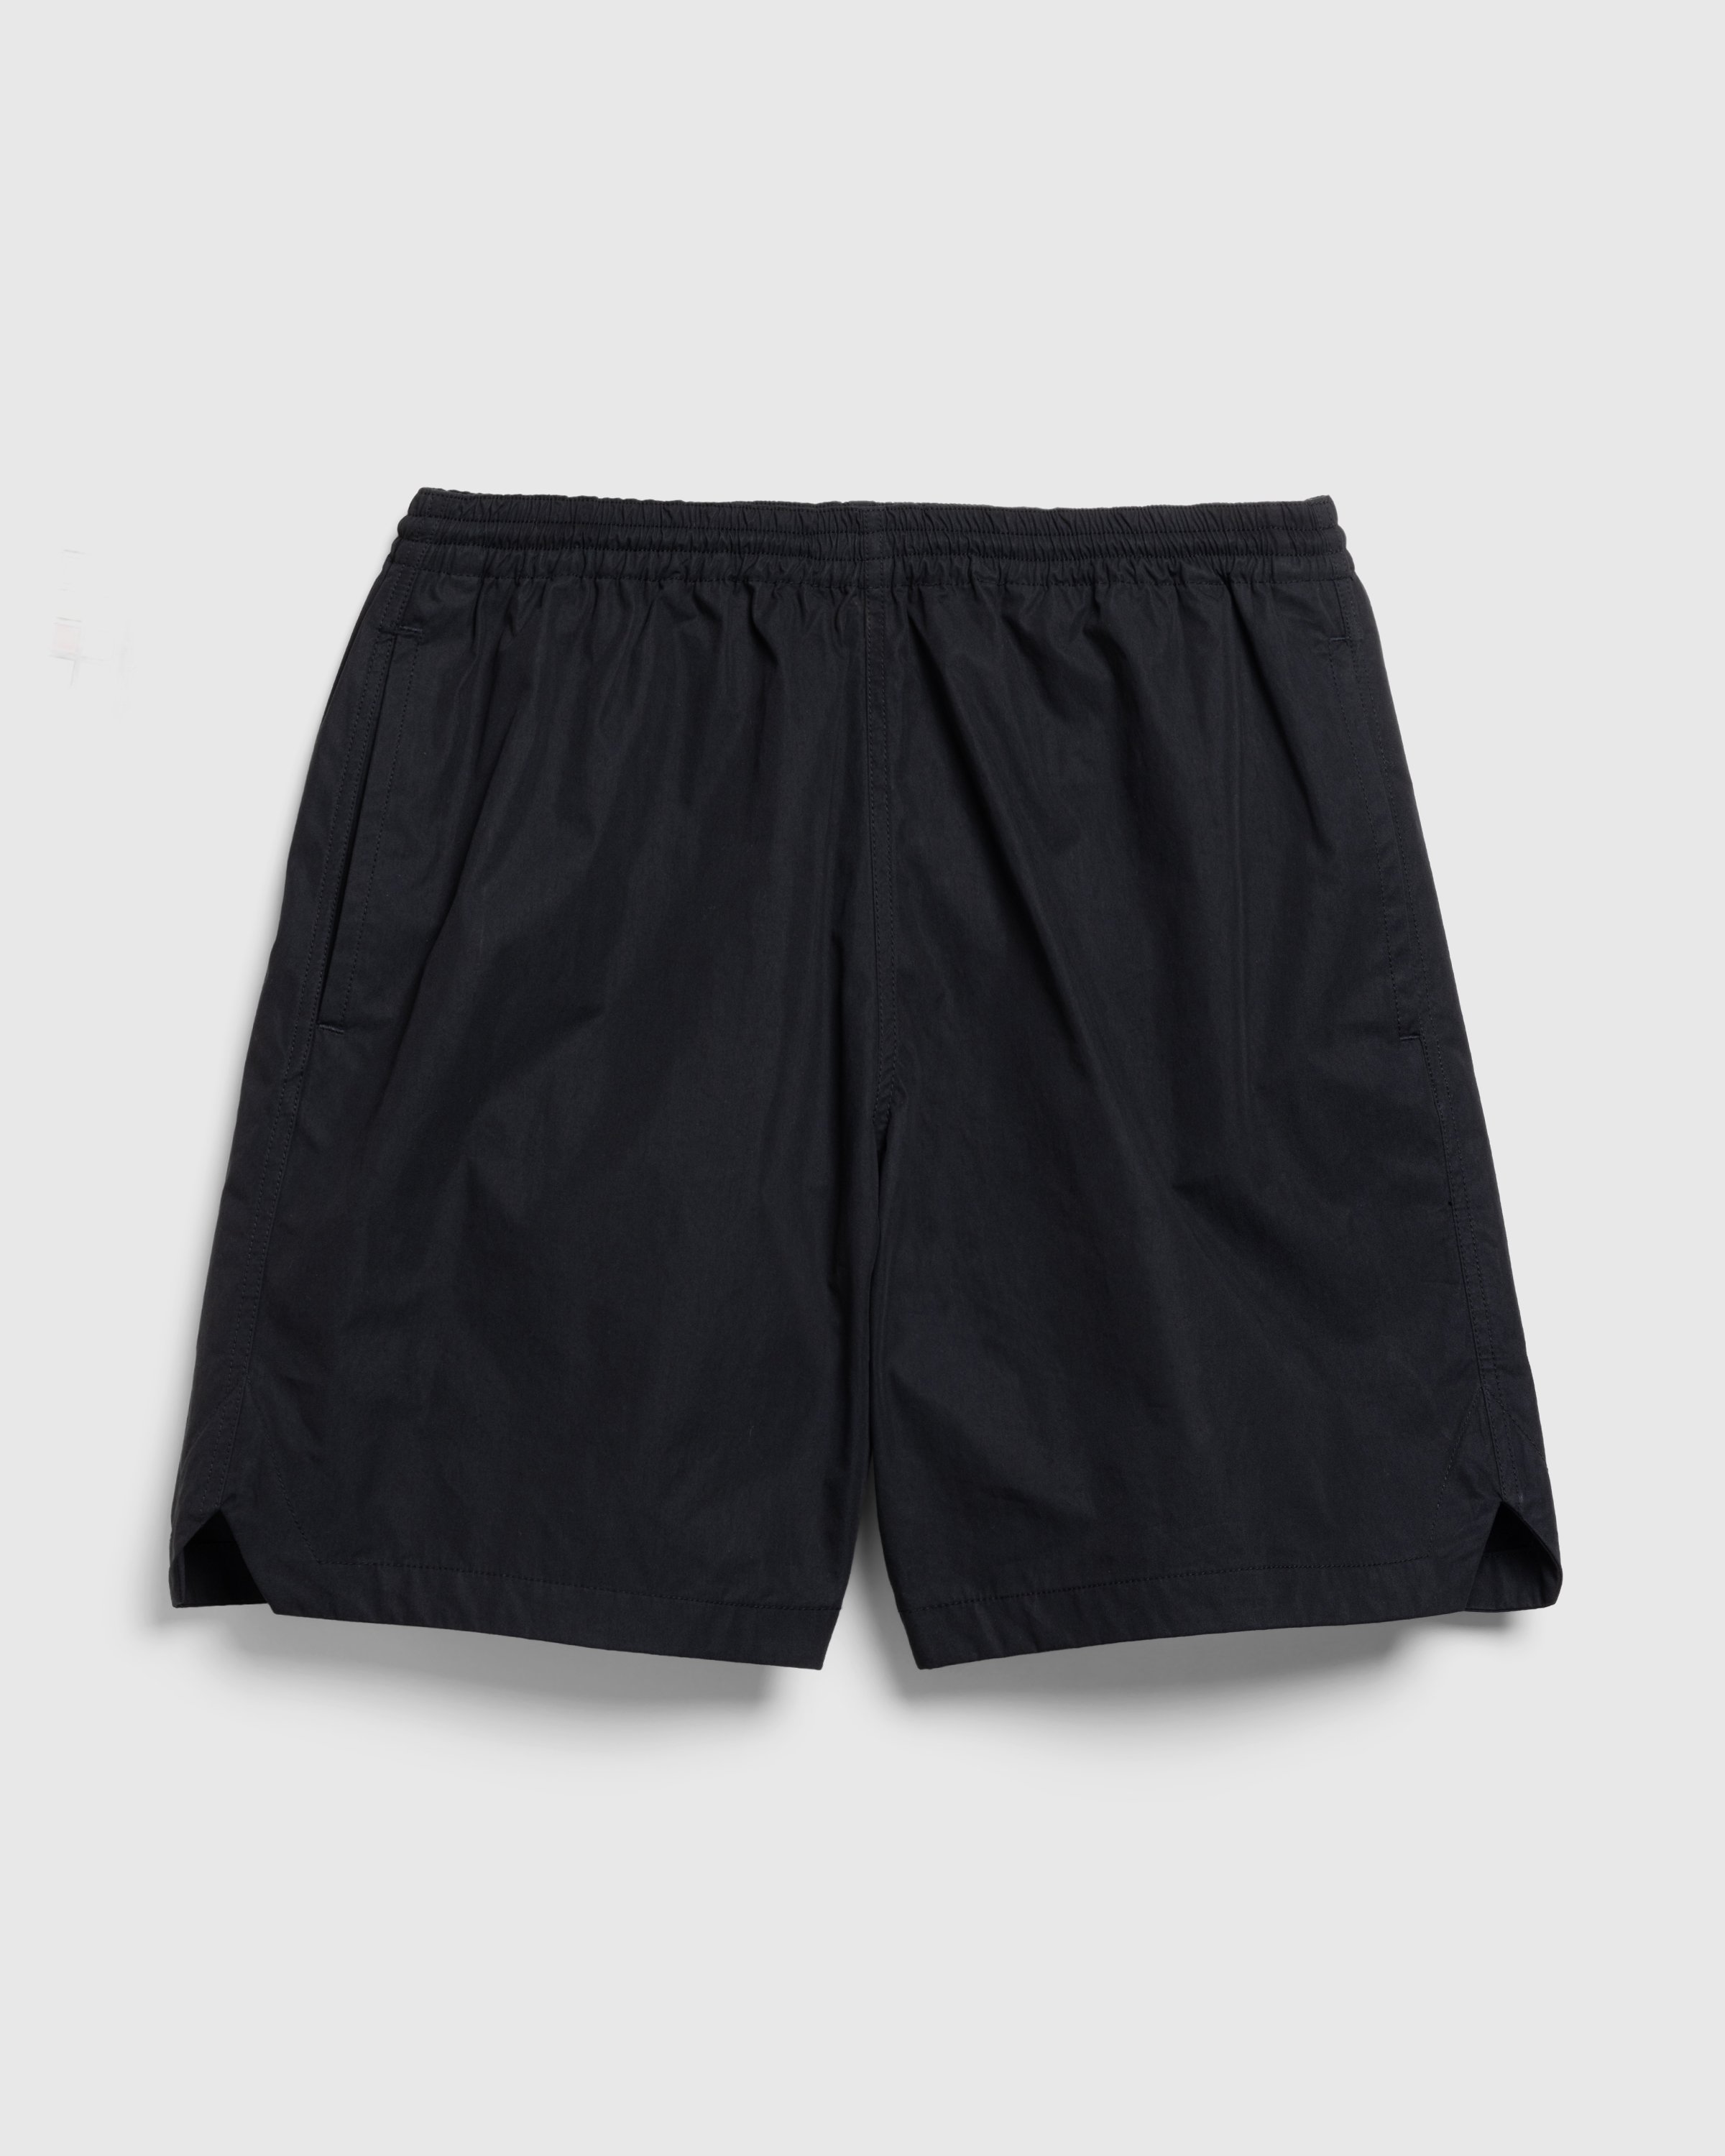 Highsnobiety HS05 - Weather Cloth Nylon Shorts Black - Clothing - Black - Image 1